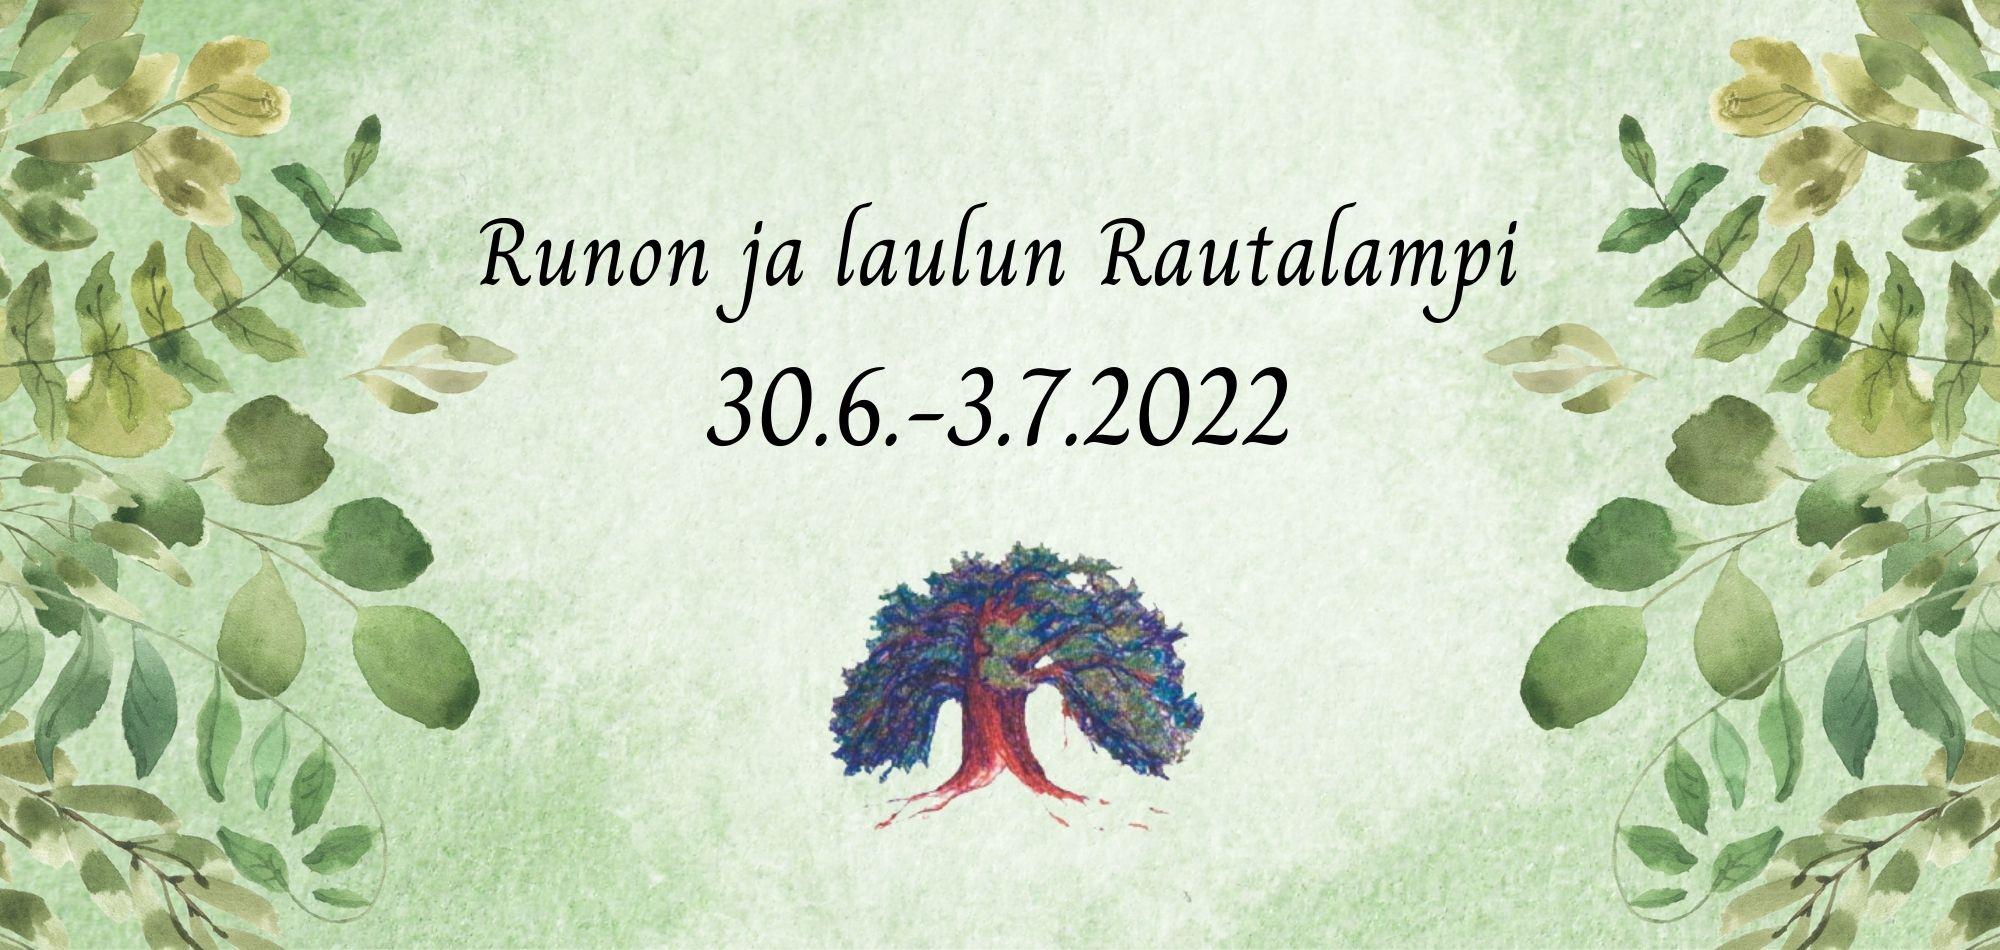 Runon ja laulun Rautalampi 2022 juliste